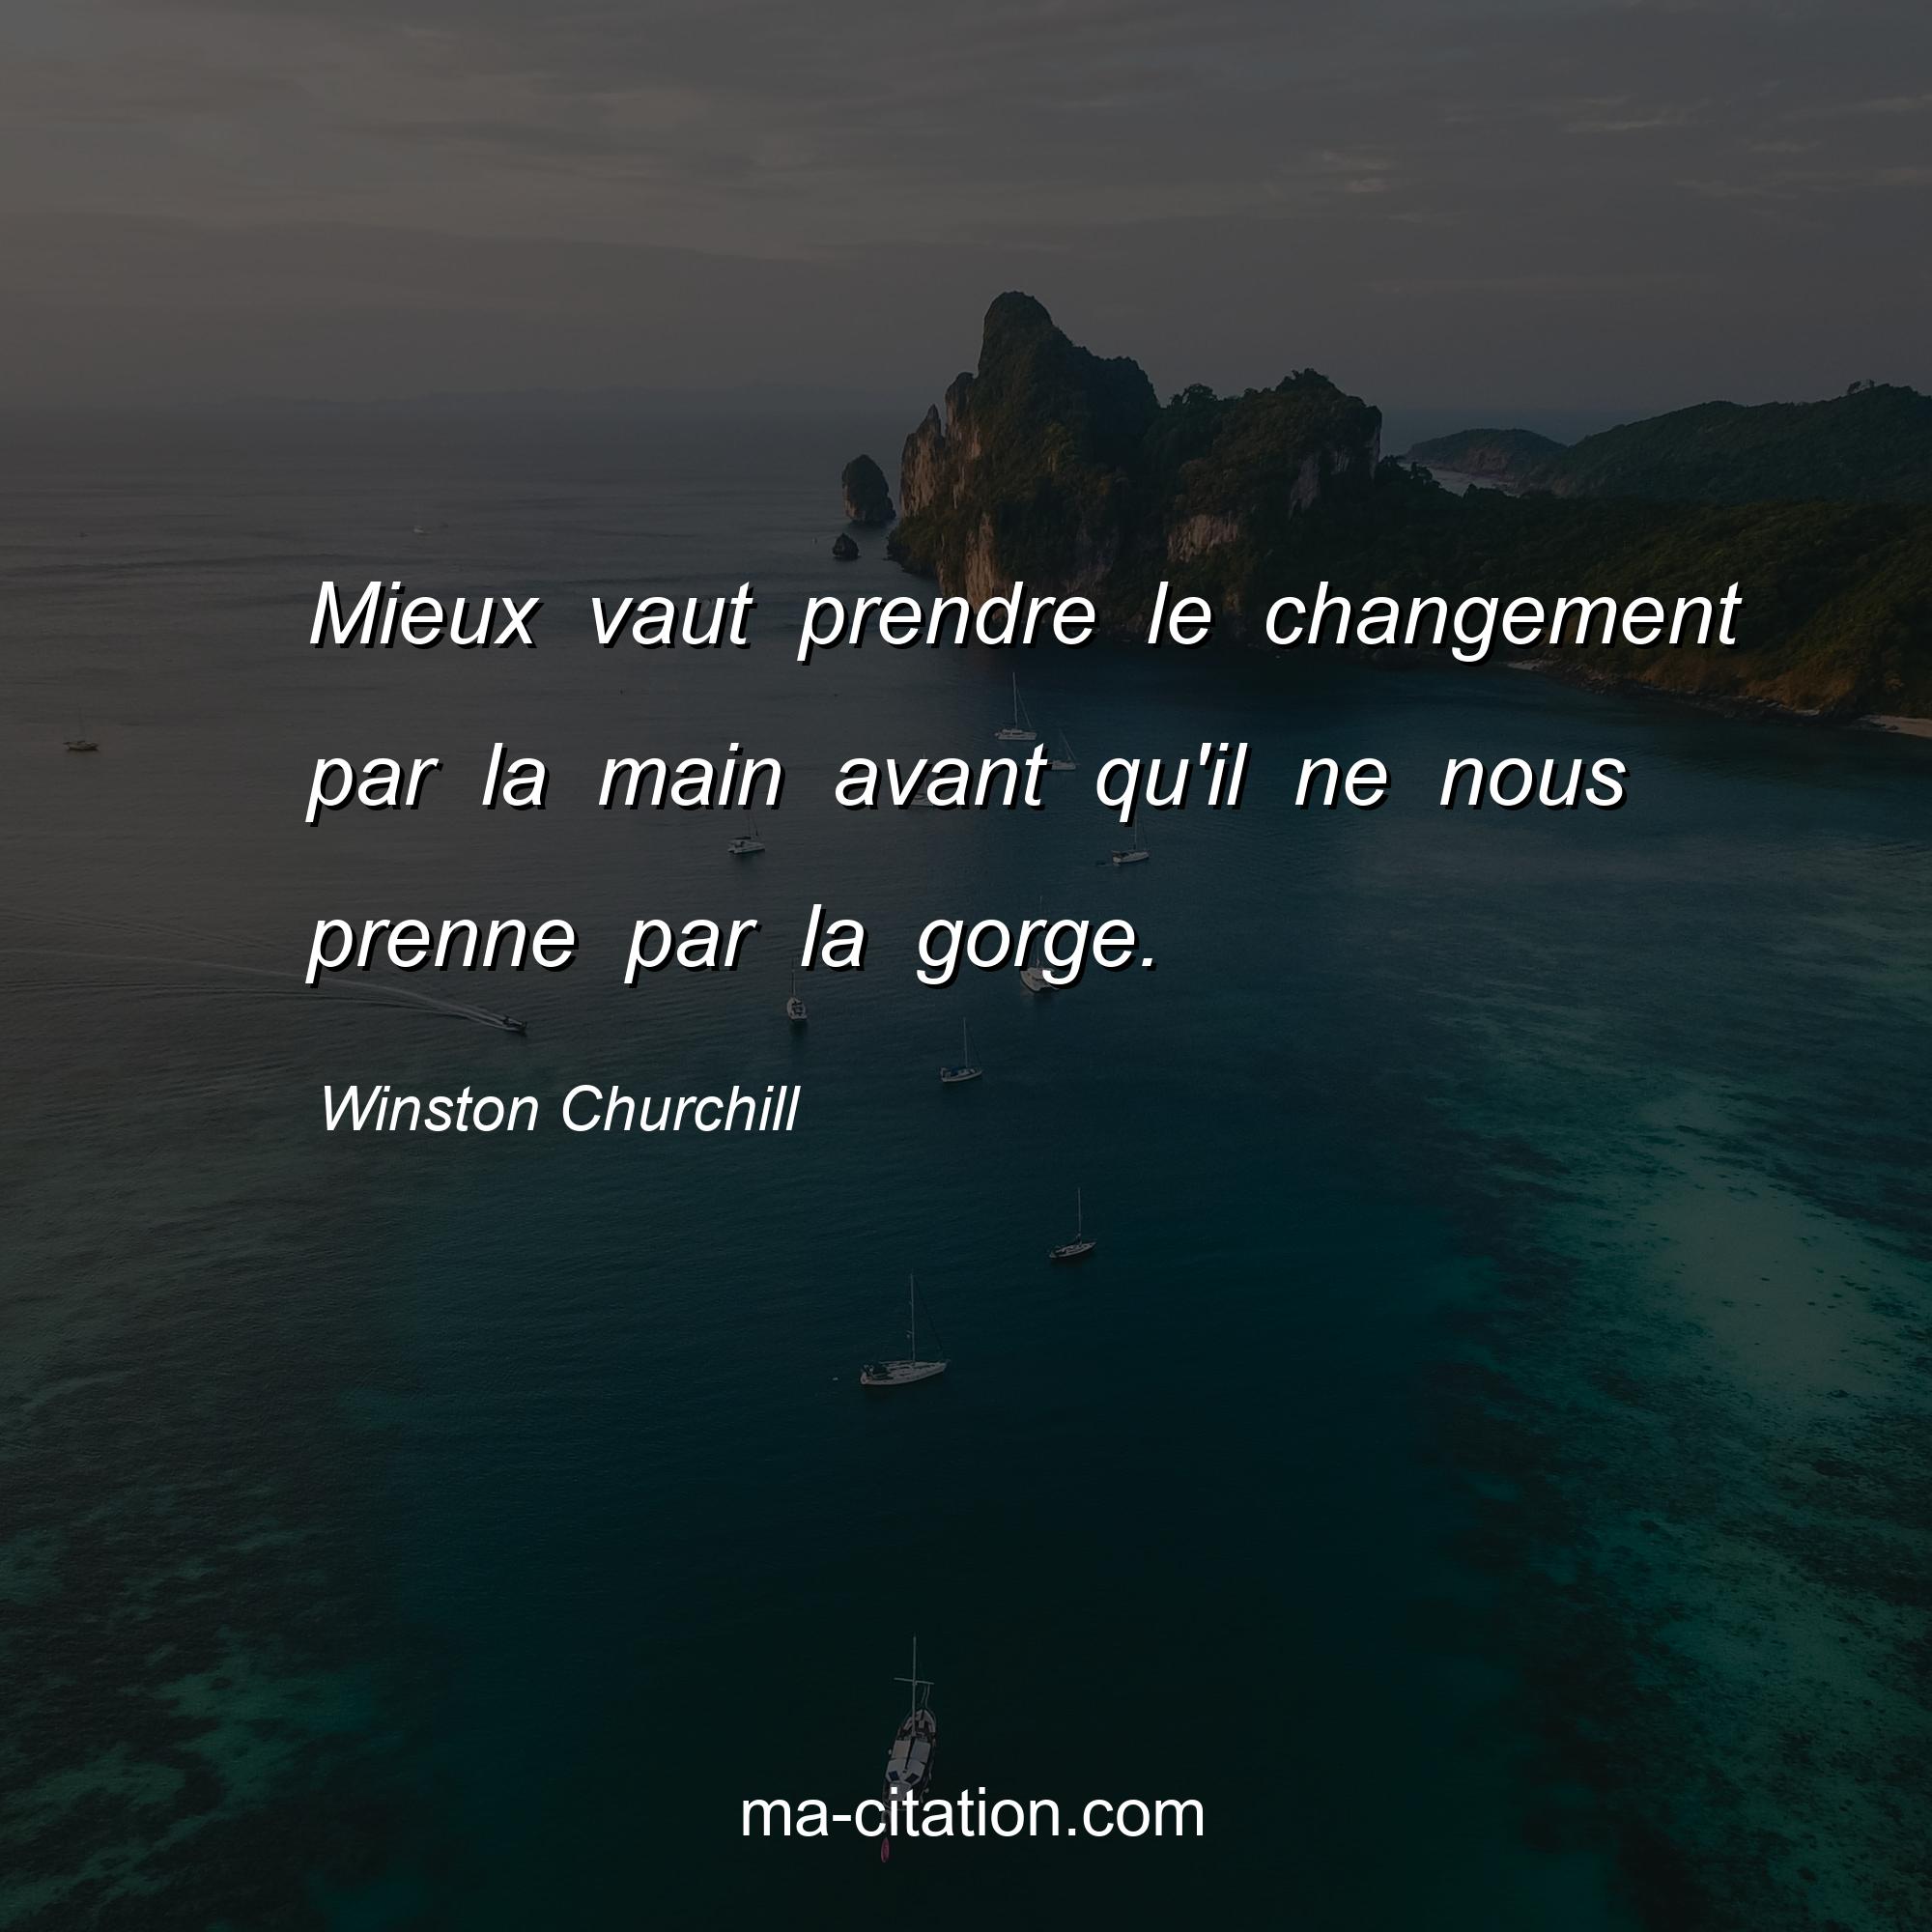 Winston Churchill : Mieux vaut prendre le changement par la main avant qu'il ne nous prenne par la gorge. 